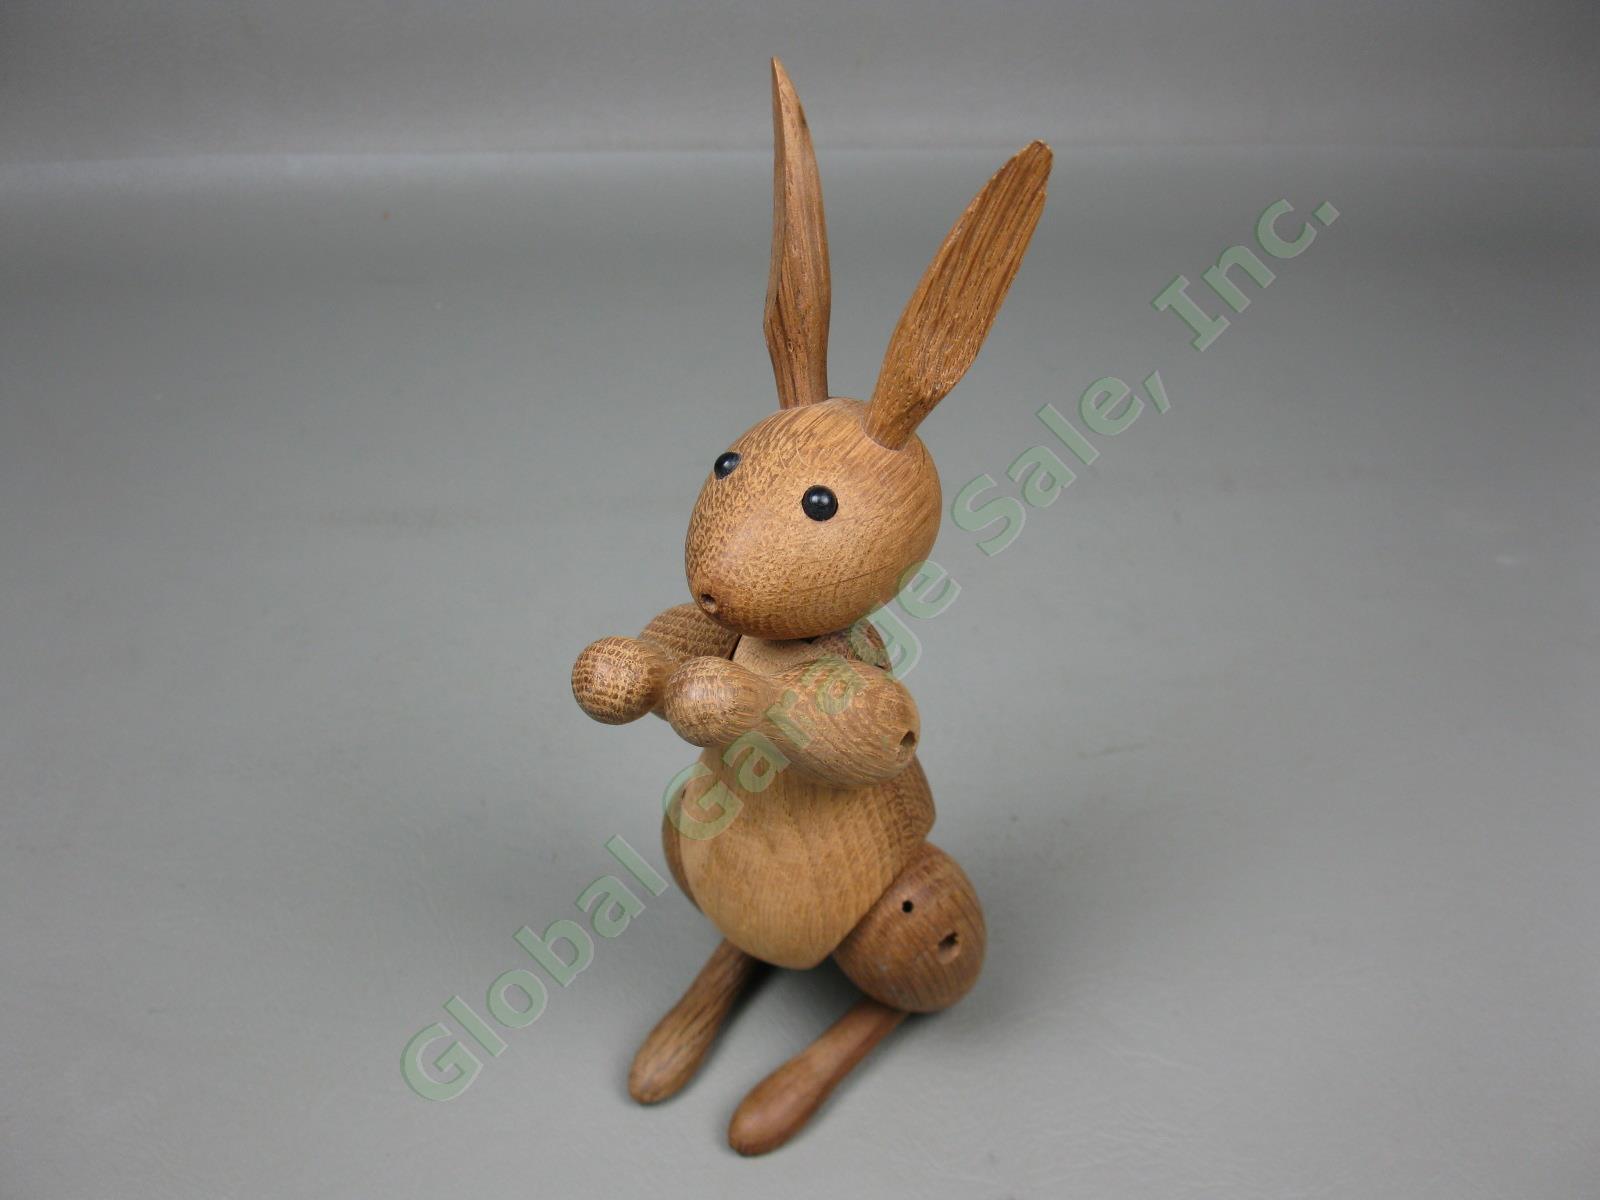 Vtg Mid-Century Modern Kay Bojesen Danish Teak Wood Wooden Rabbit Toy Denmark NR